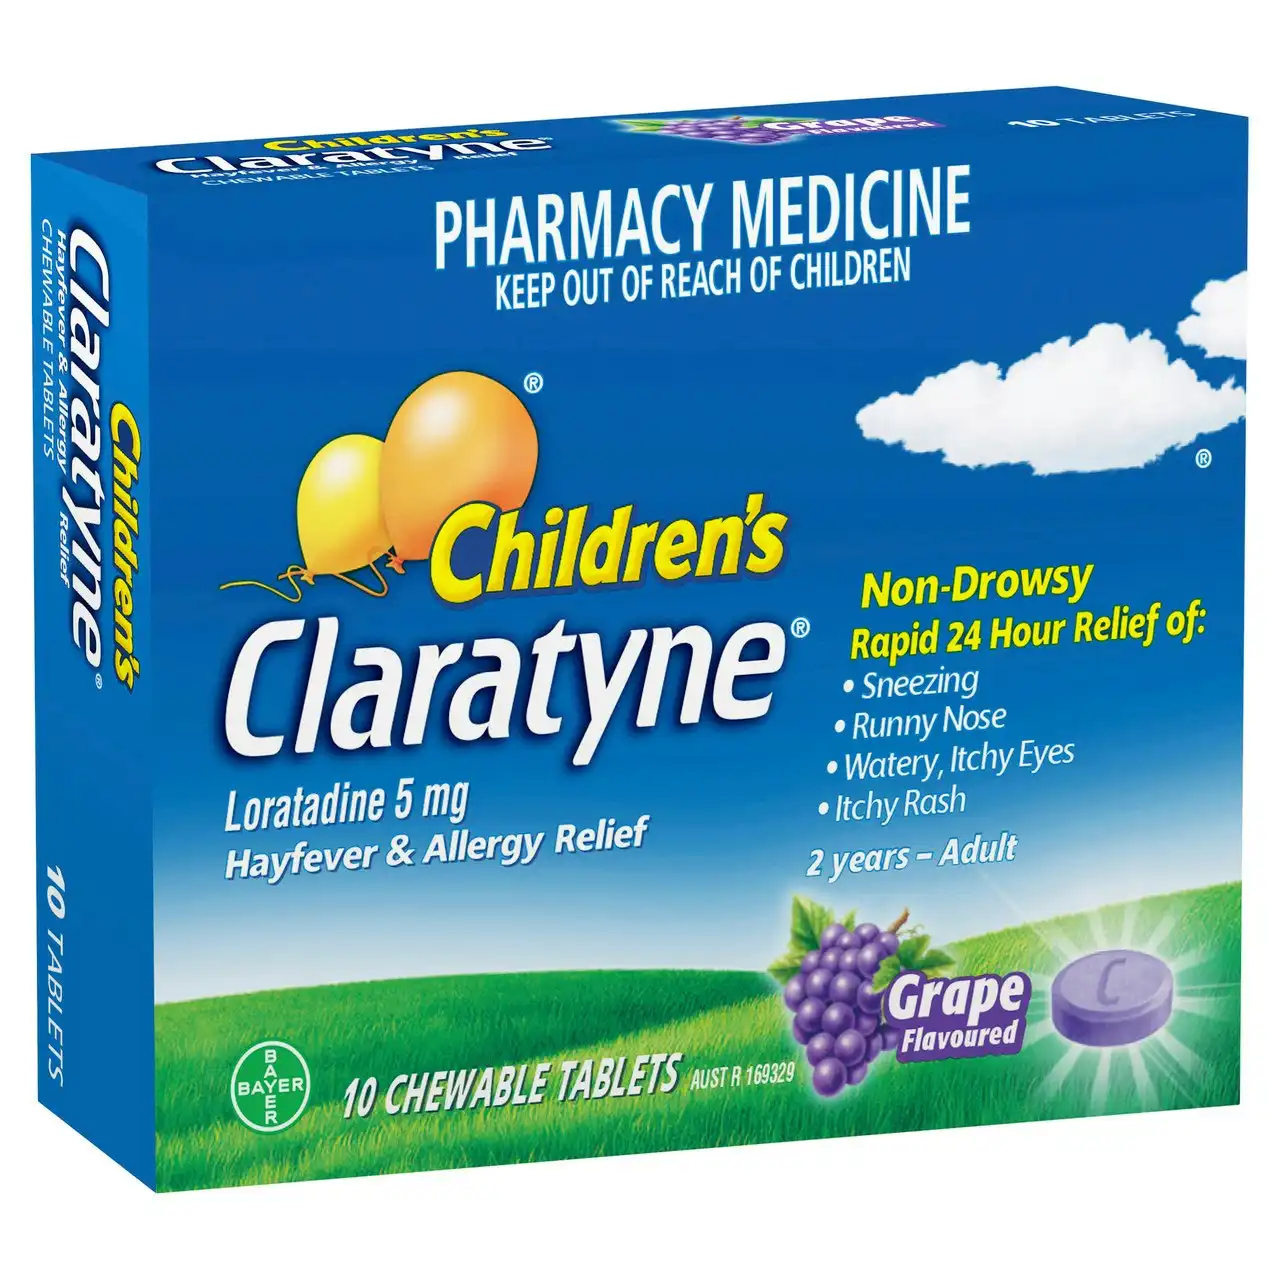 Children's CLARATYNE Allergy & Hayfever Relief Antihistamine Grape Flavoured Chewable Tablets 10 pack